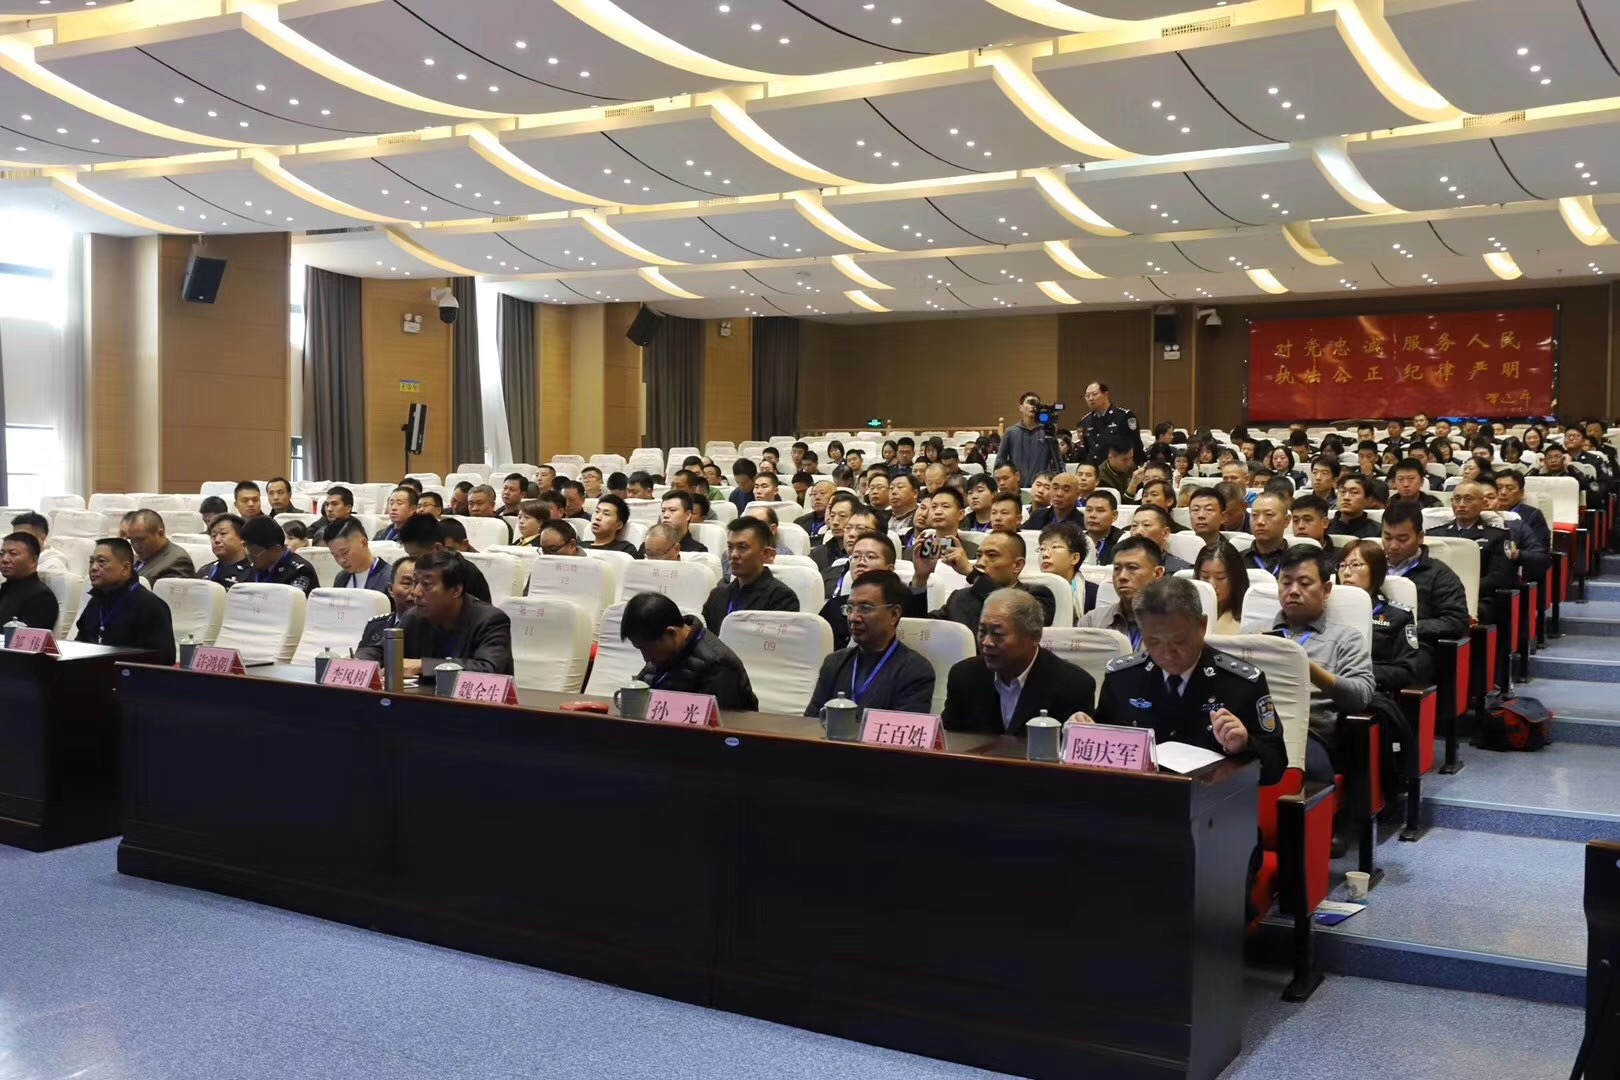 第18届中国安检排爆技术研讨会暨全国防爆排爆高层论坛